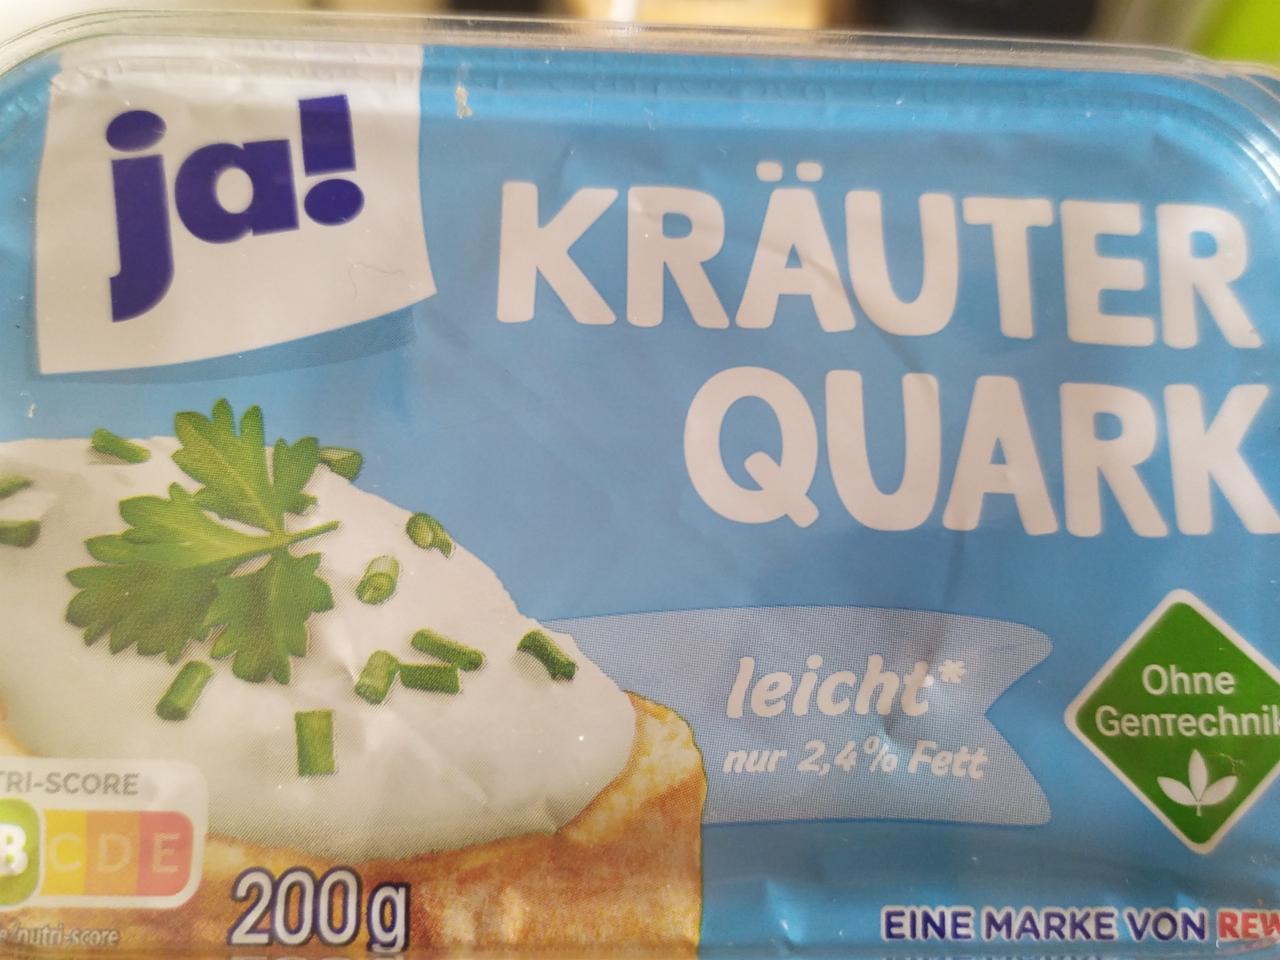 Fotografie - Kräuter Quark 2,4% Fett Ja!